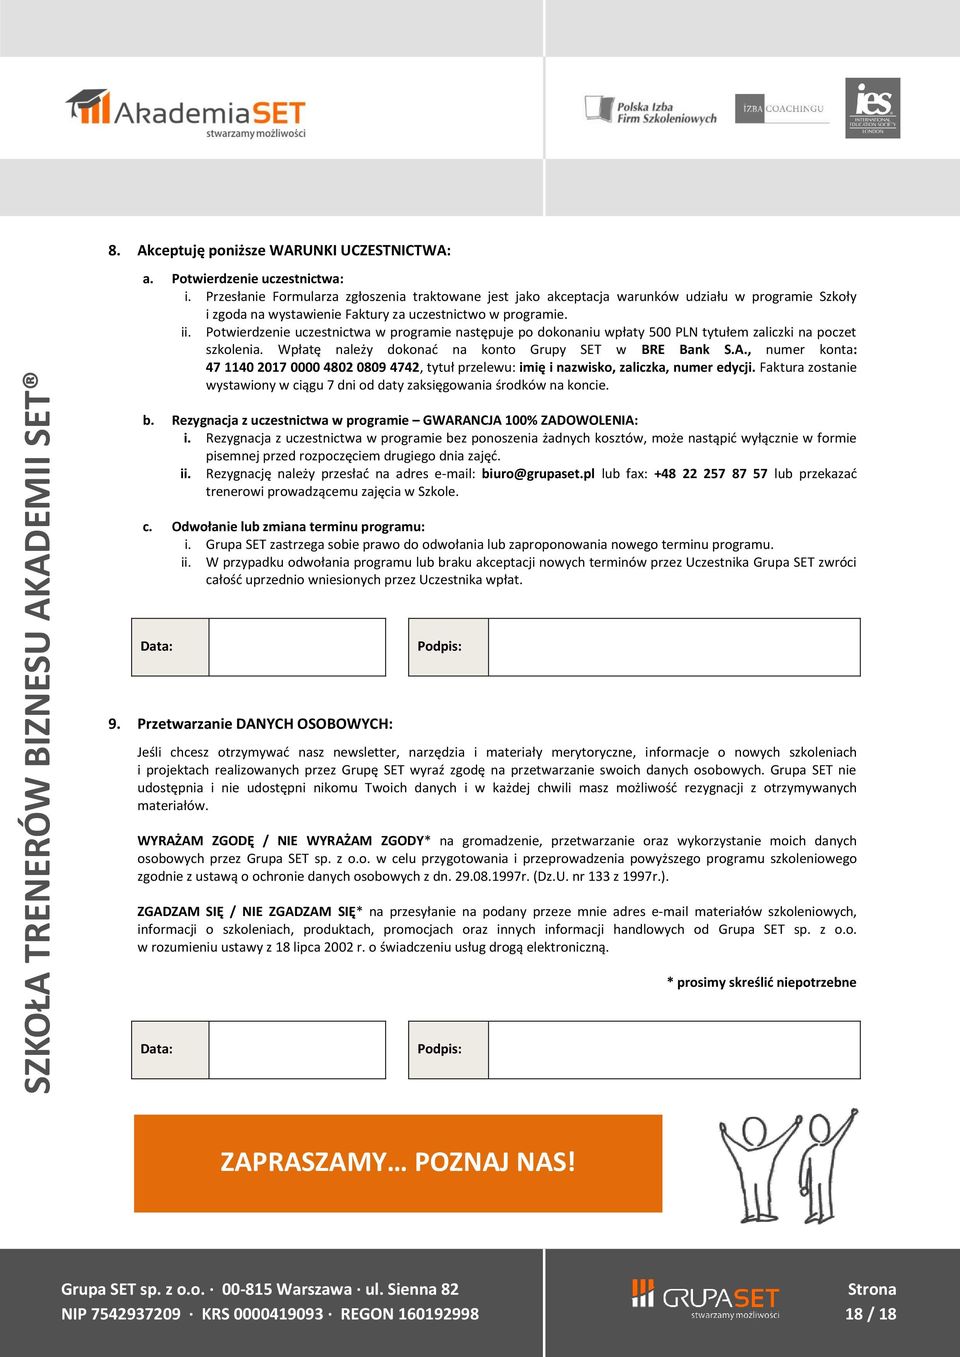 Potwierdzenie uczestnictwa w programie następuje po dokonaniu wpłaty 500 PLN tytułem zaliczki na poczet szkolenia. Wpłatę należy dokonać na konto Grupy SET w BRE Bank S.A.